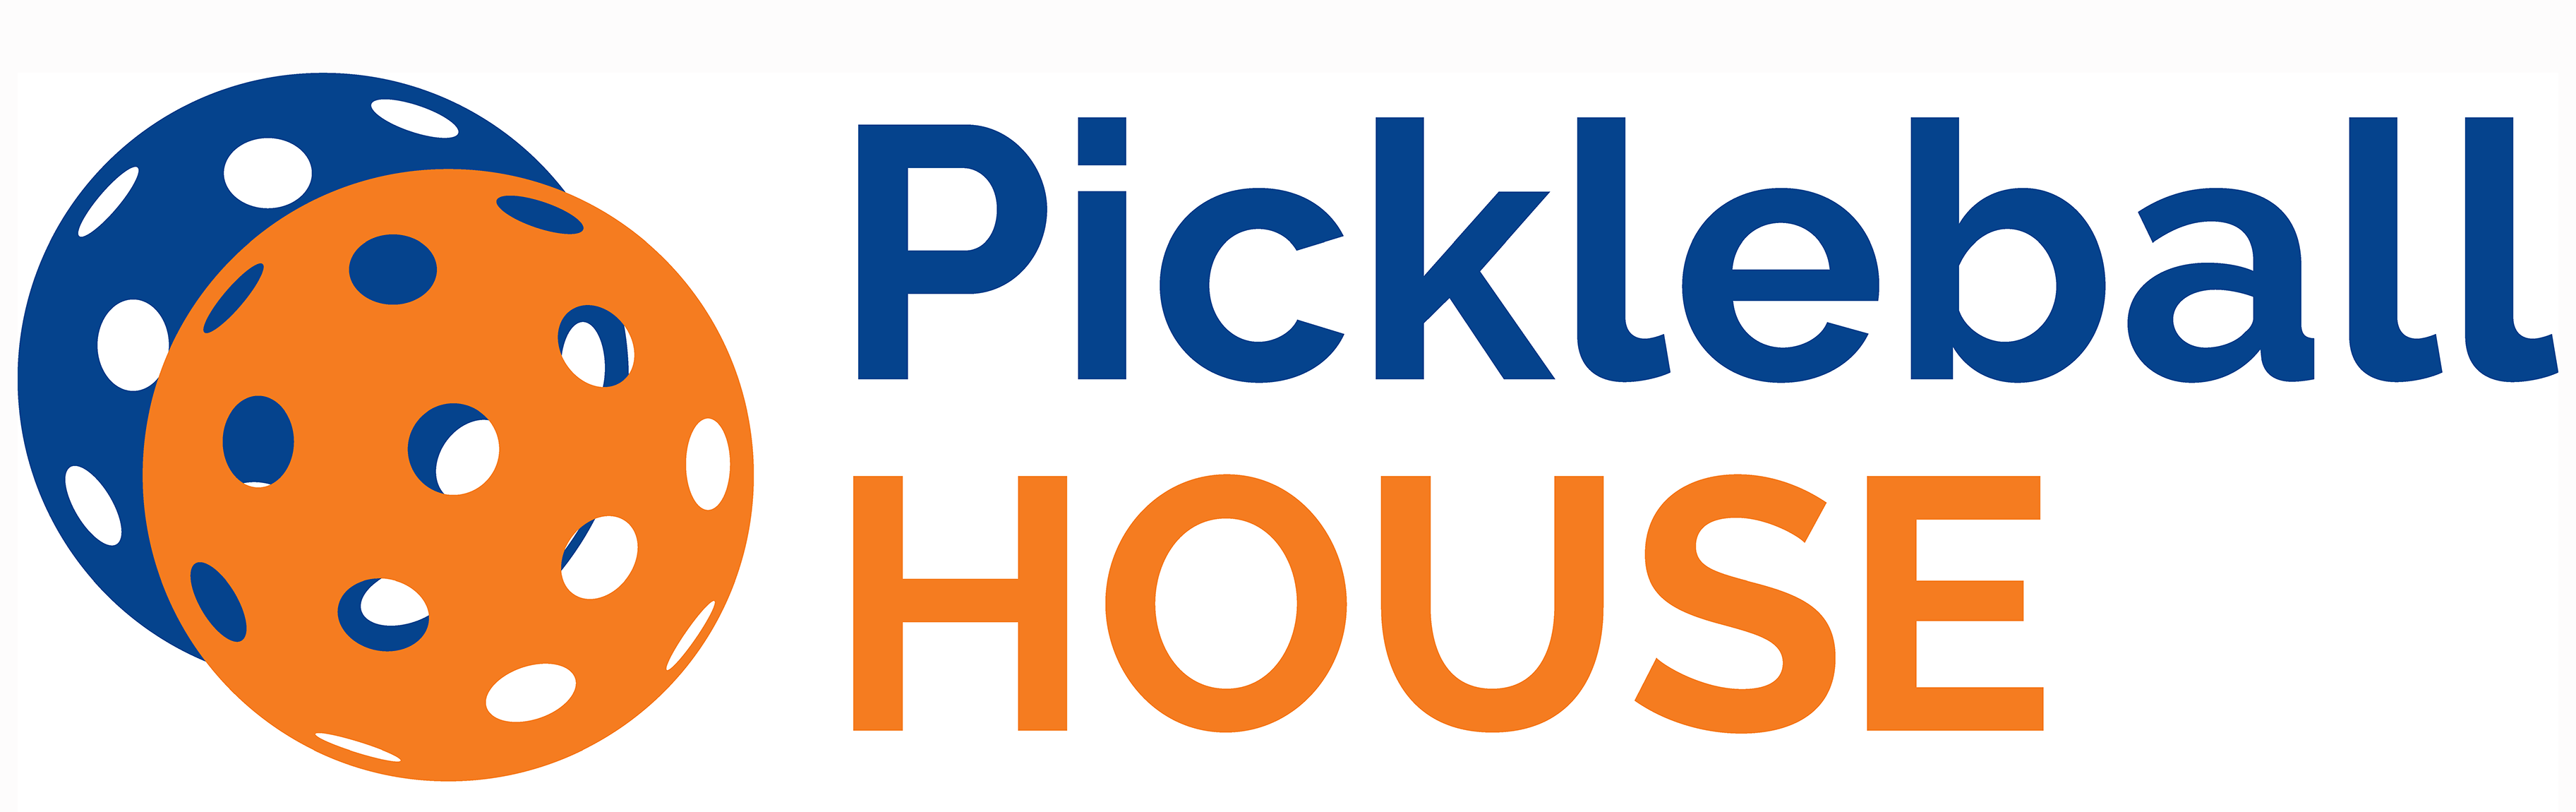 Pickleball House Logo